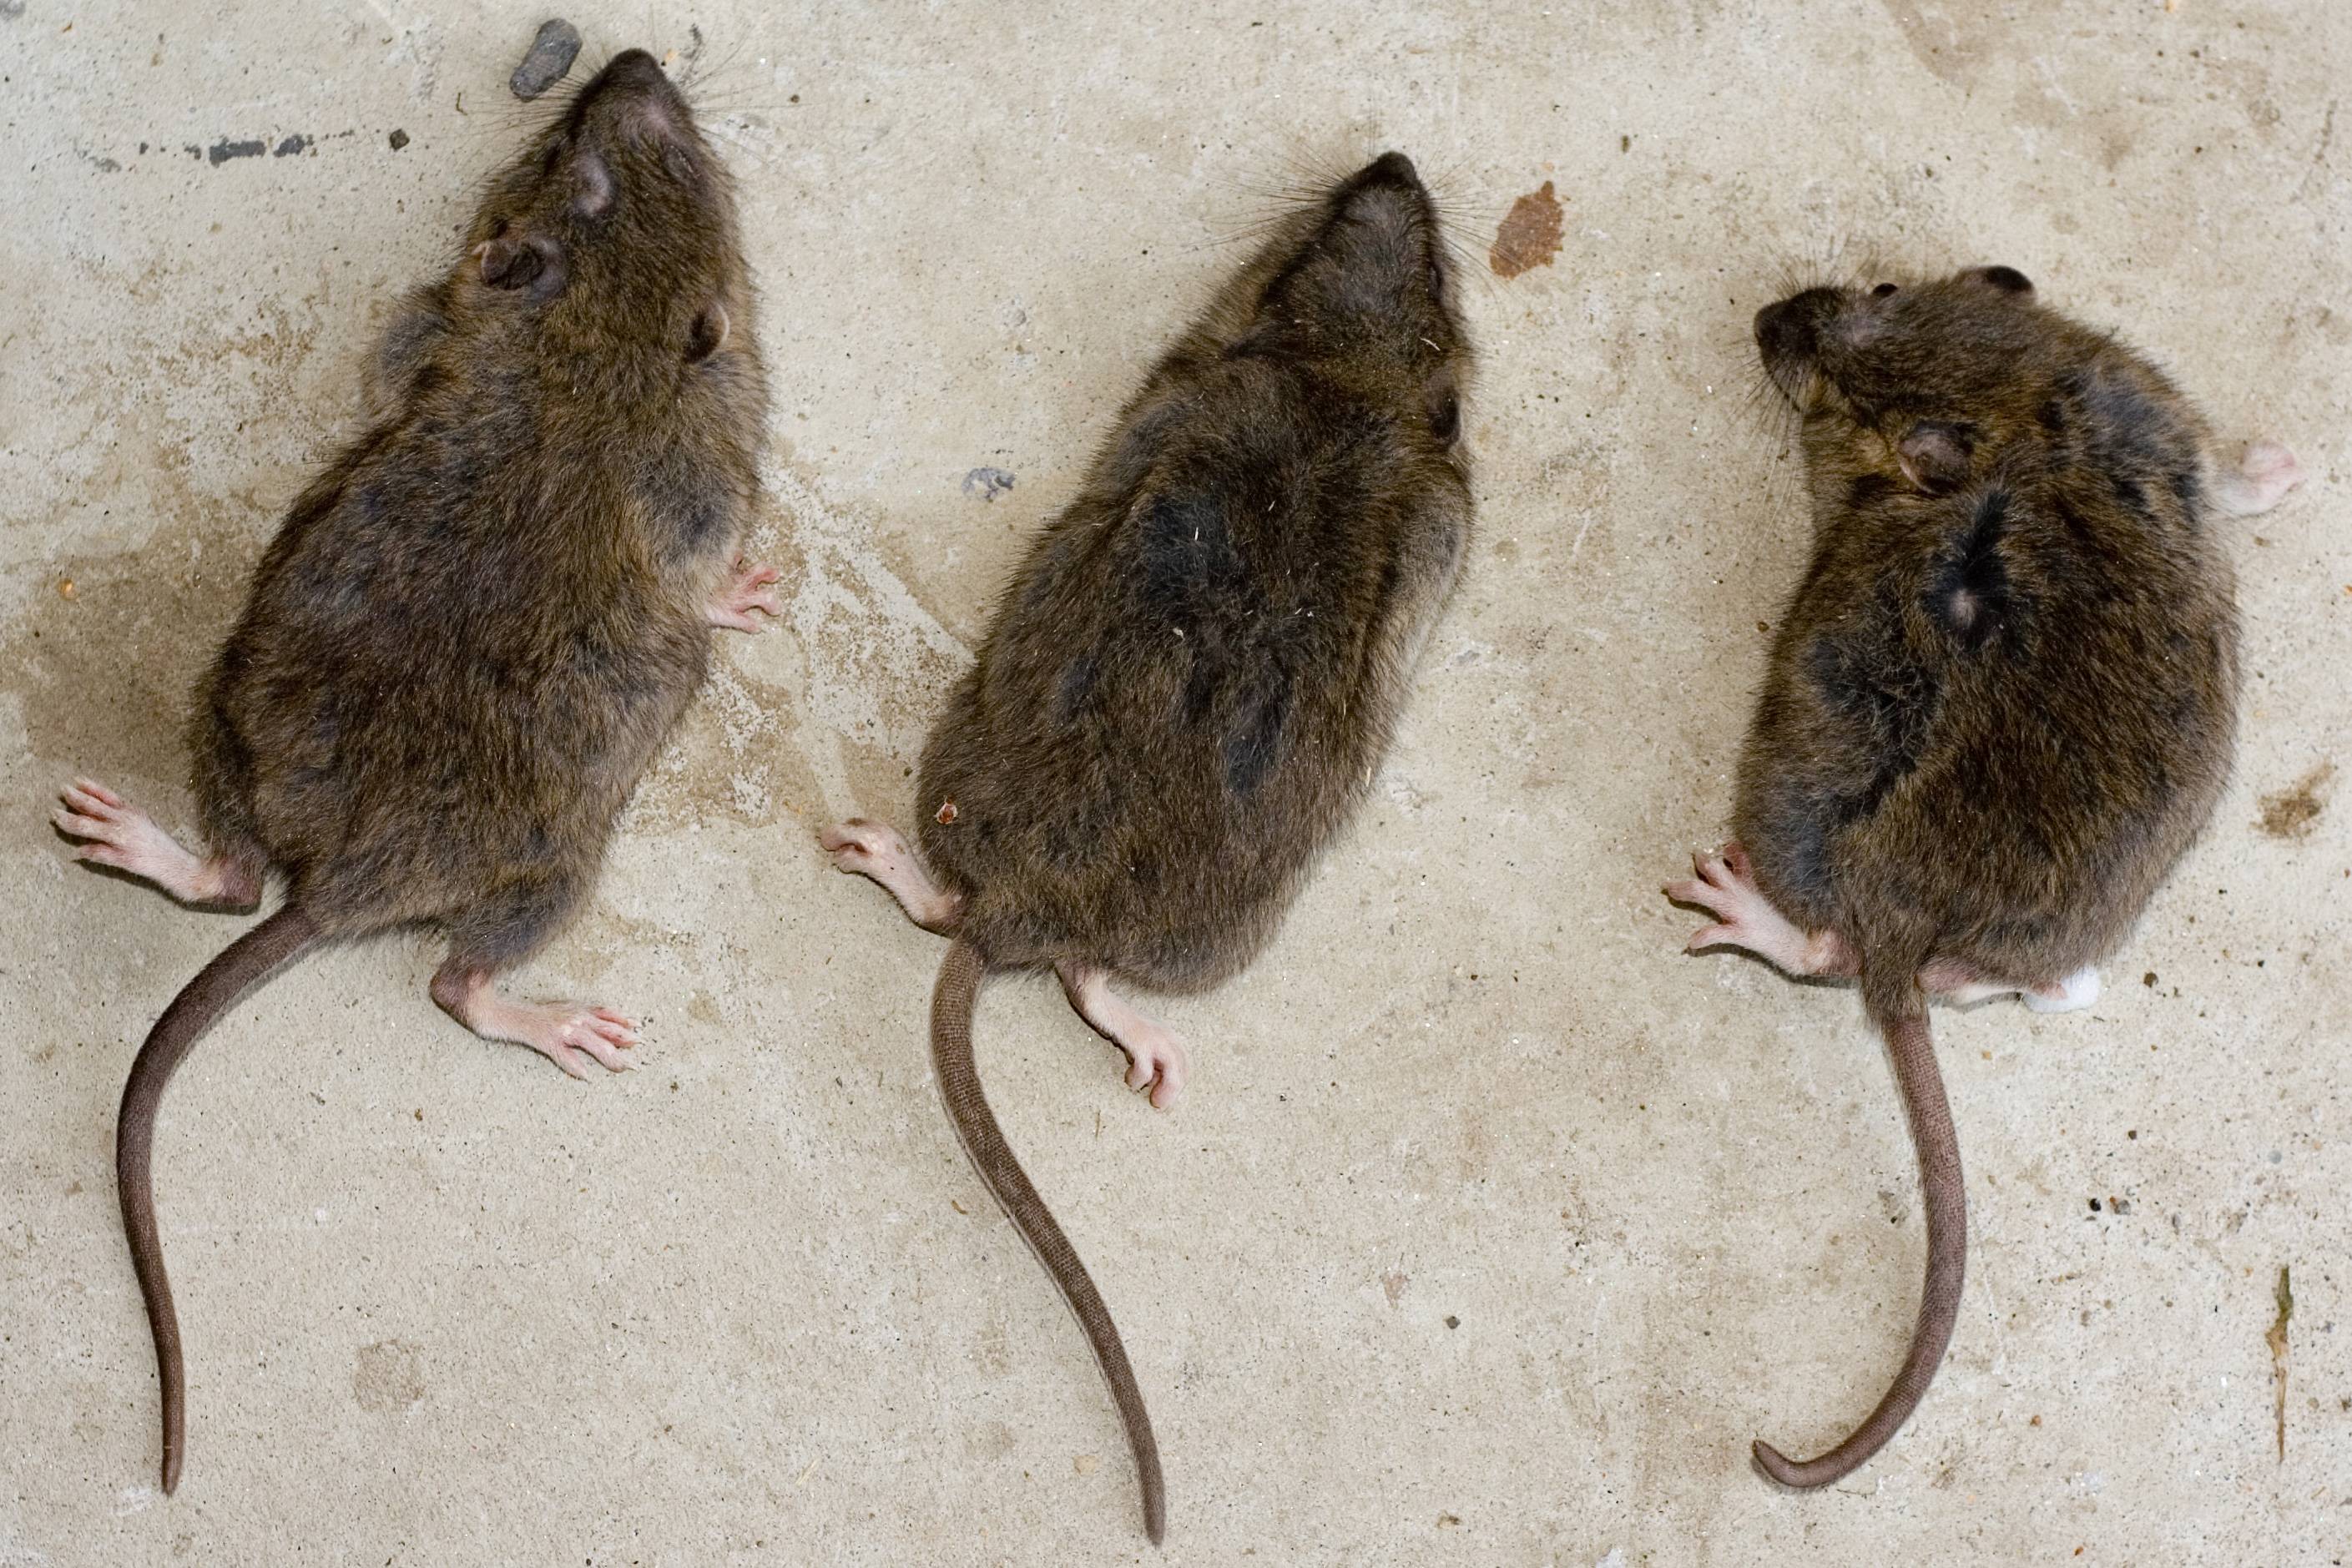 Домовые мыши: описание, виды и фото, способы борьбы